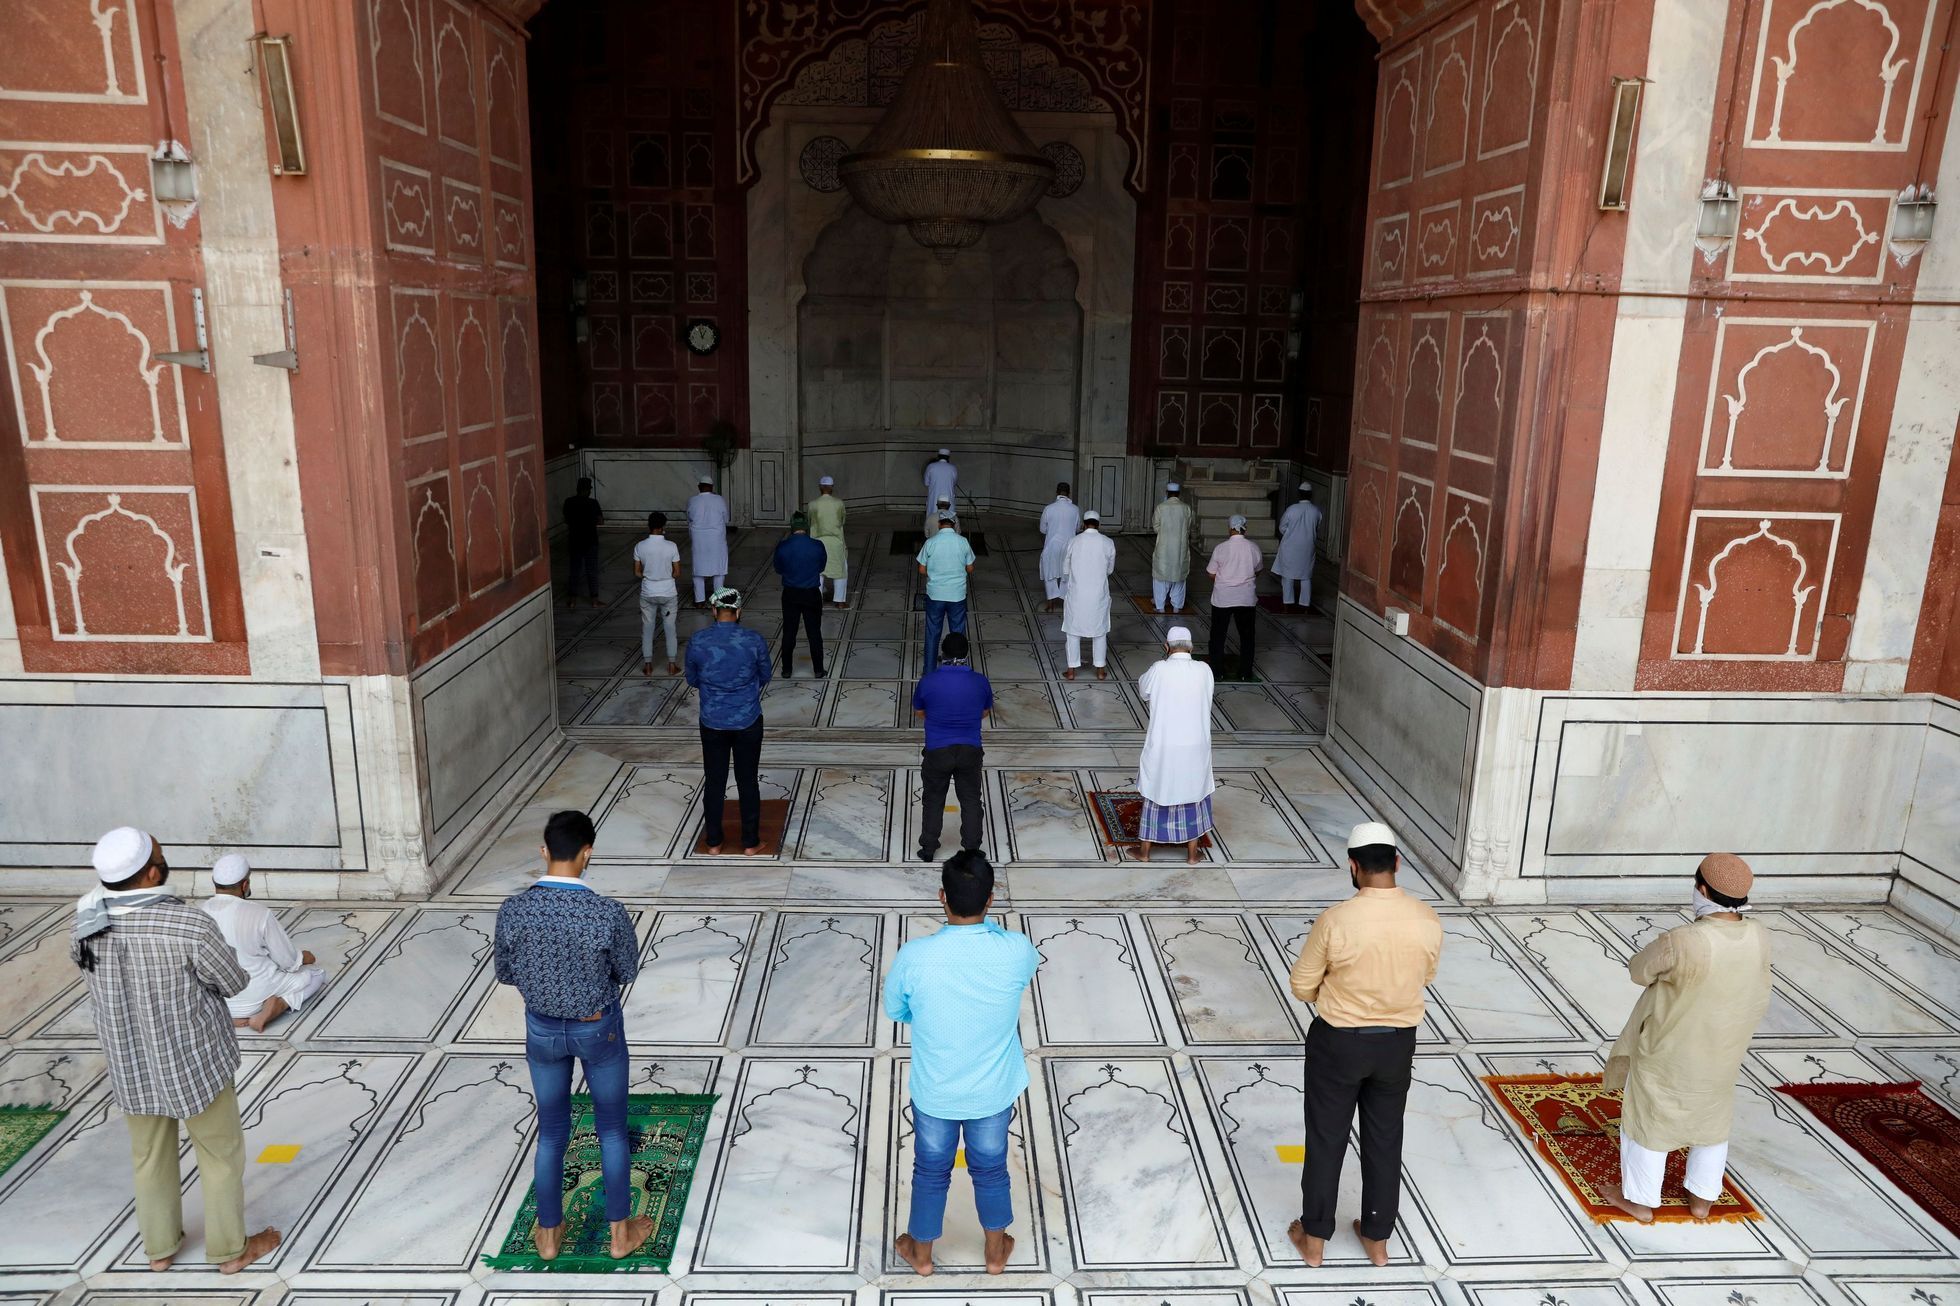 Indie otevřela mešity, které byly zavřeny kvůli koronaviru.